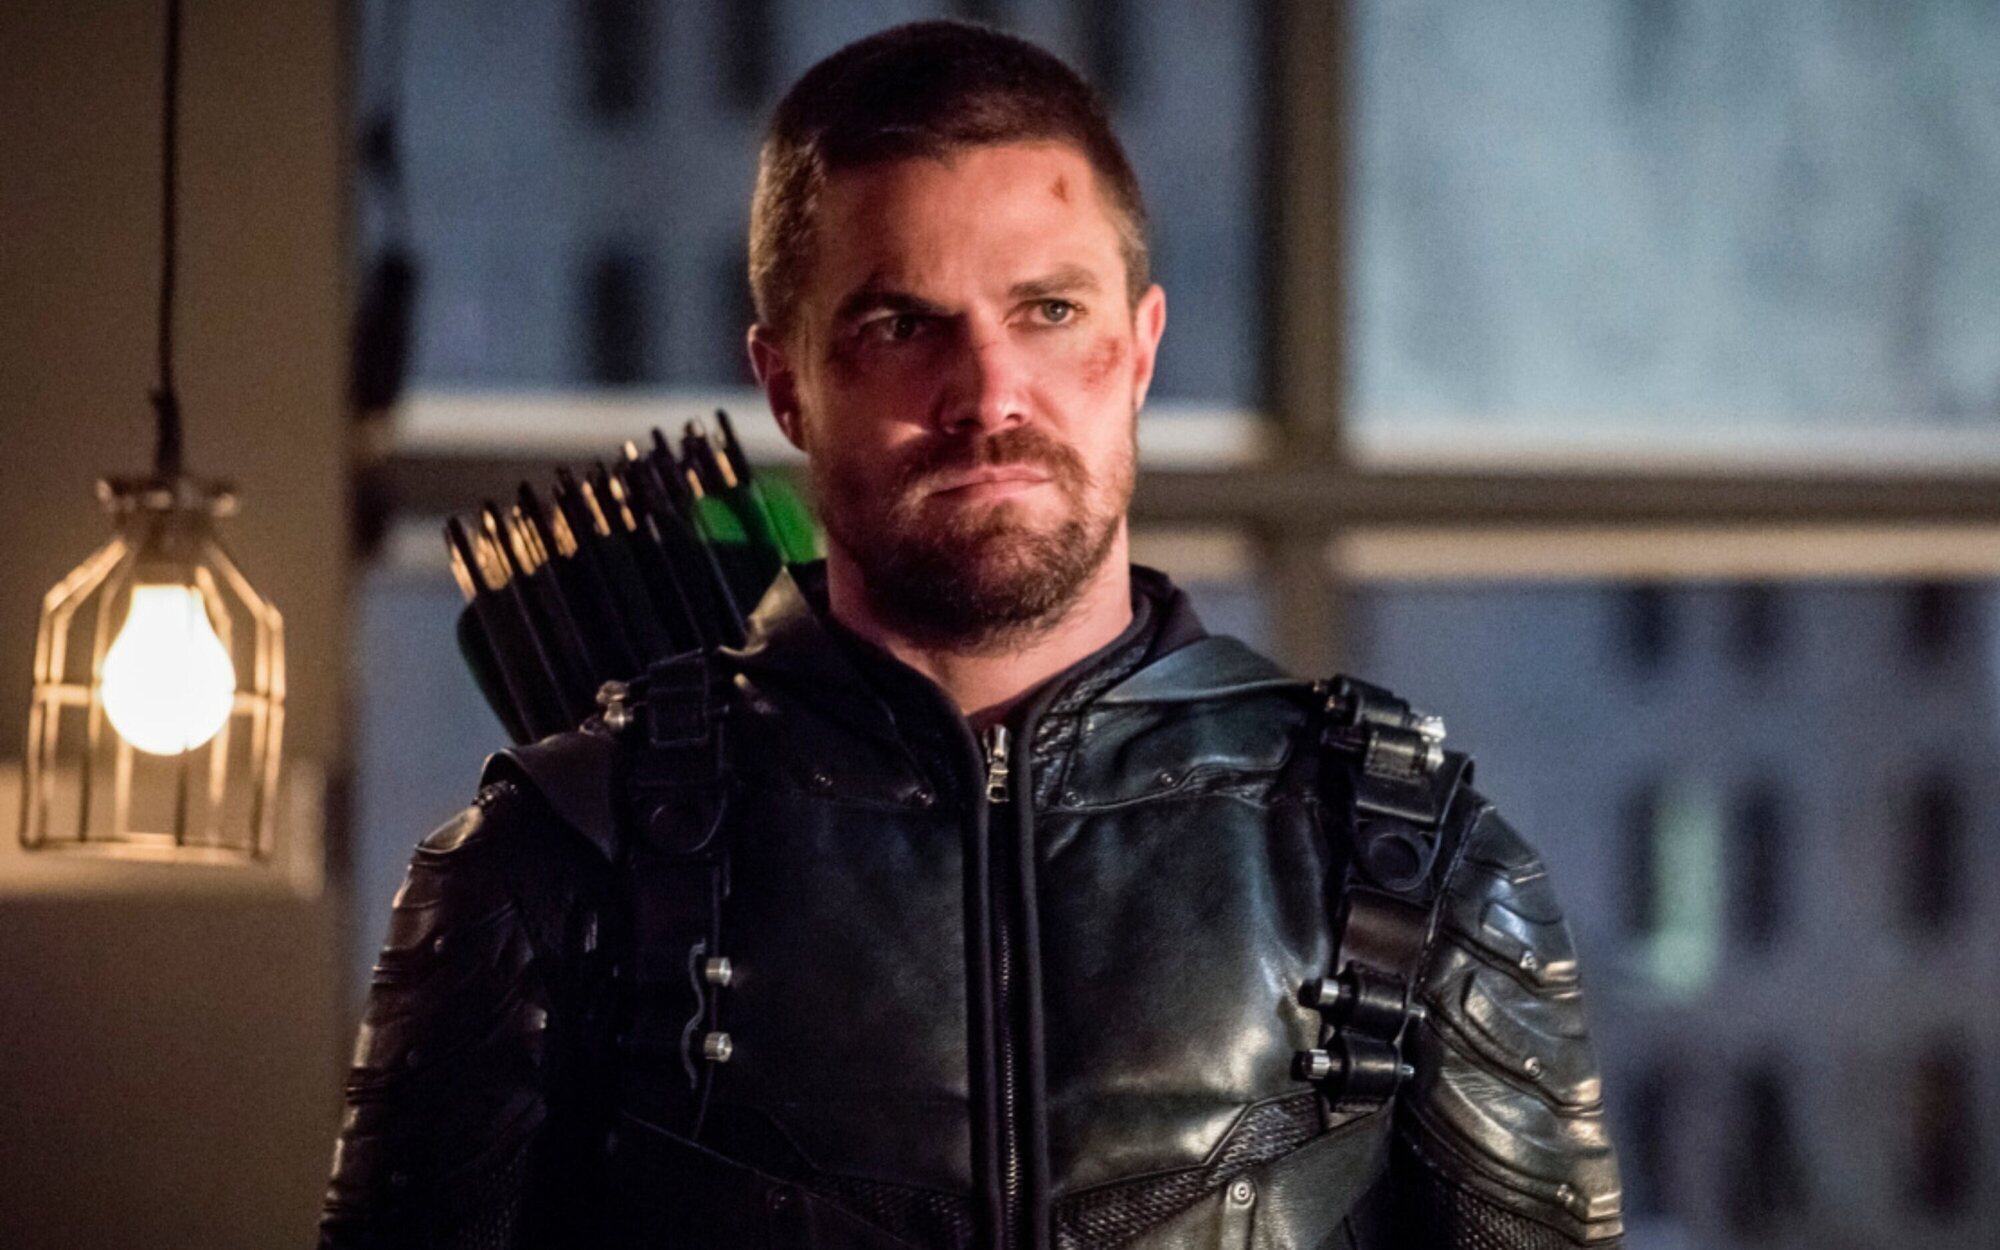 Stephen Amell regresará como Arrow en la última temporada de 'The Flash'